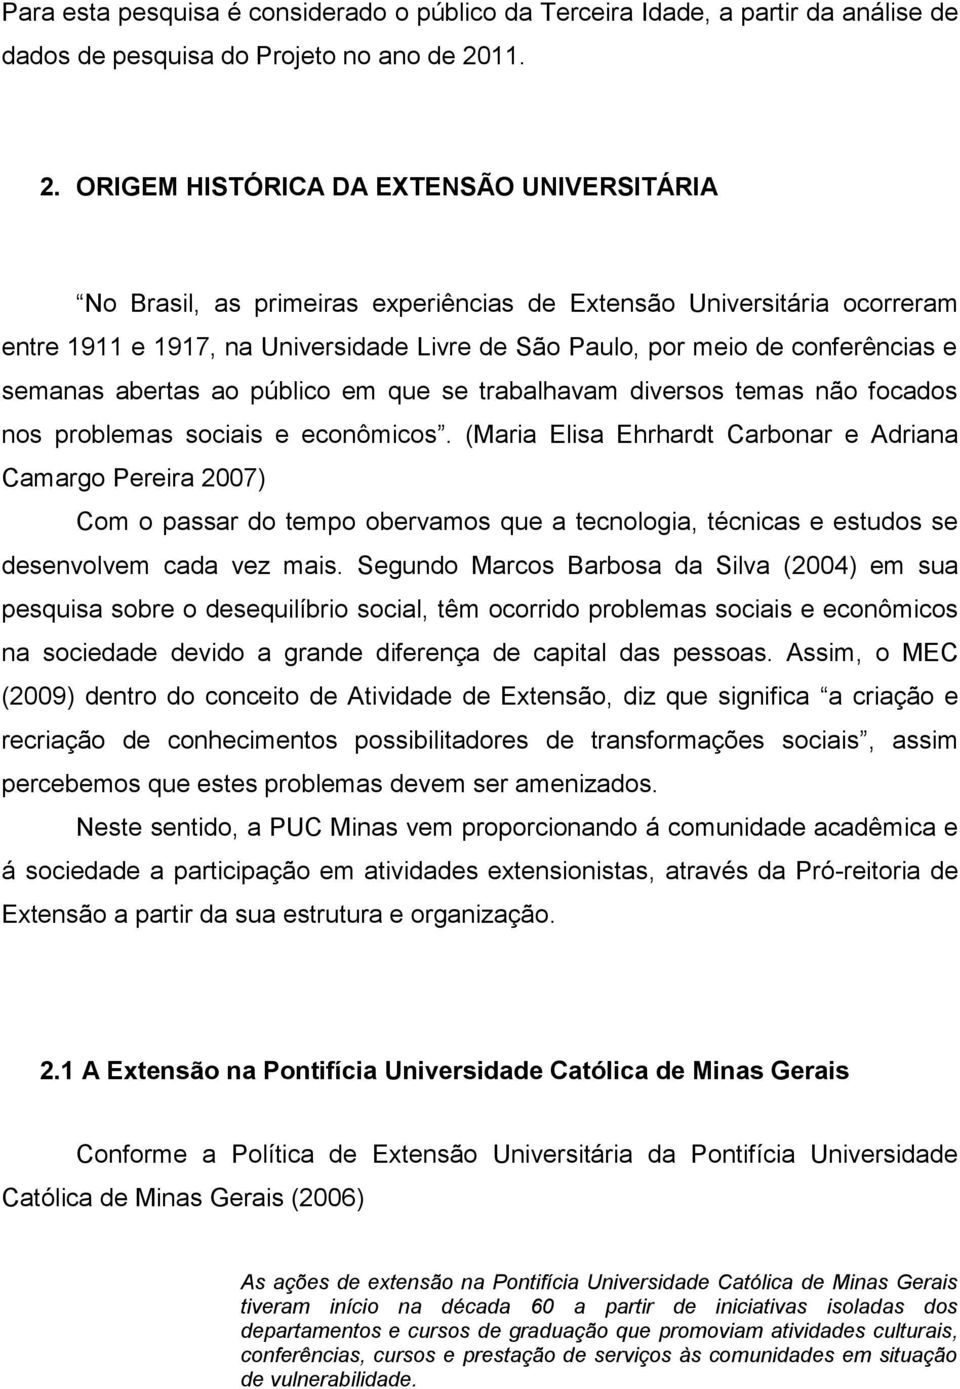 ORIGEM HISTÓRICA DA EXTENSÃO UNIVERSITÁRIA No Brasil, as primeiras experiências de Extensão Universitária ocorreram entre 1911 e 1917, na Universidade Livre de São Paulo, por meio de conferências e